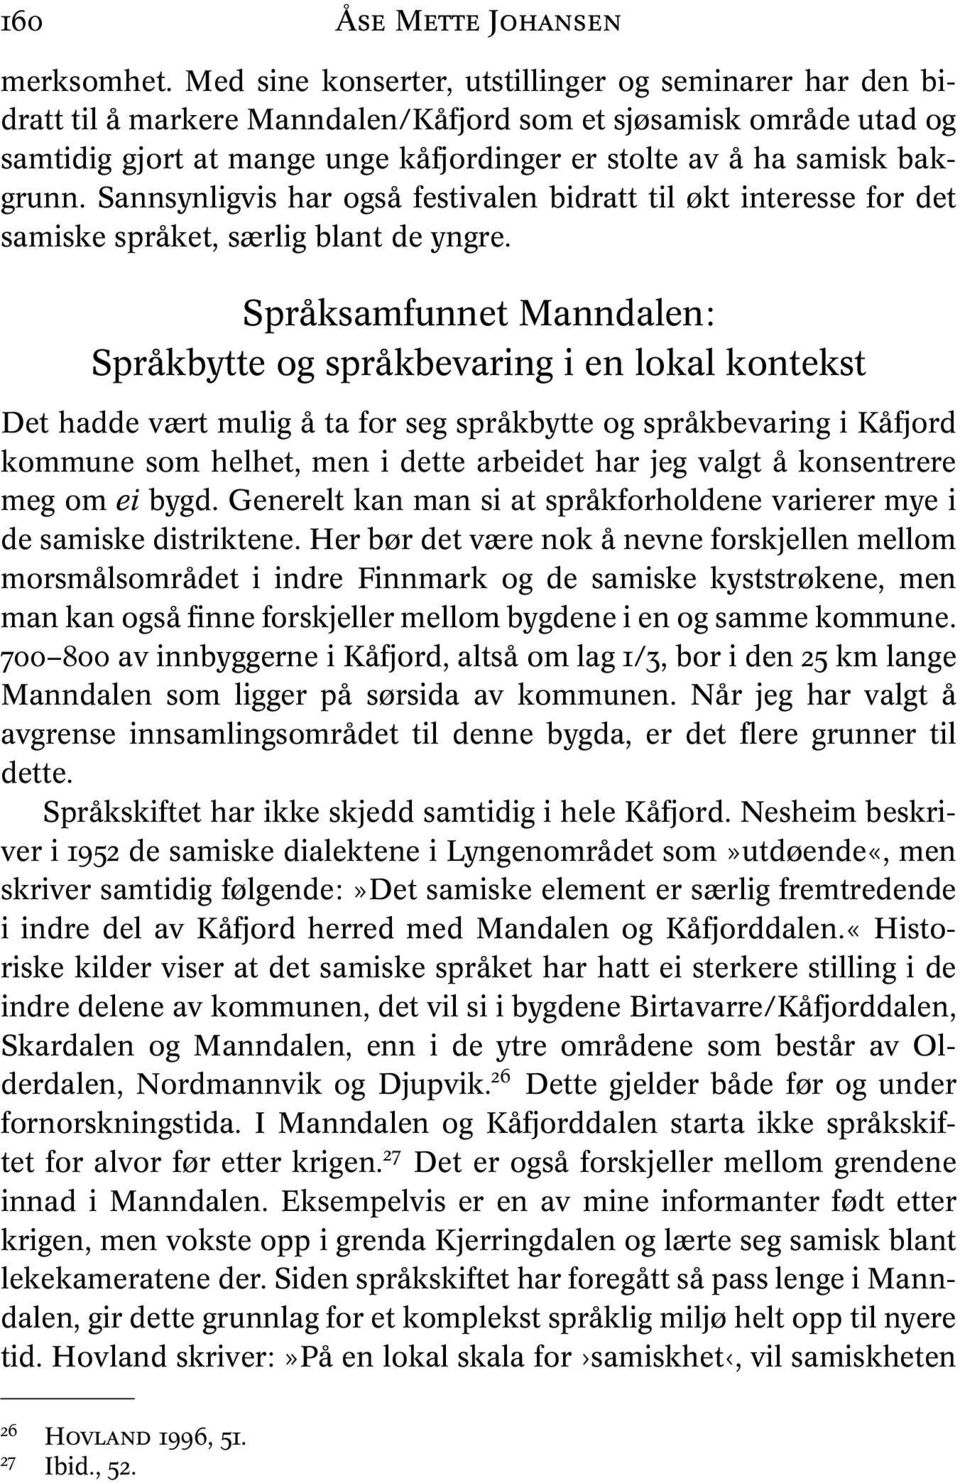 bakgrunn. Sannsynligvis har også festivalen bidratt til økt interesse for det samiske språket, særlig blant de yngre.